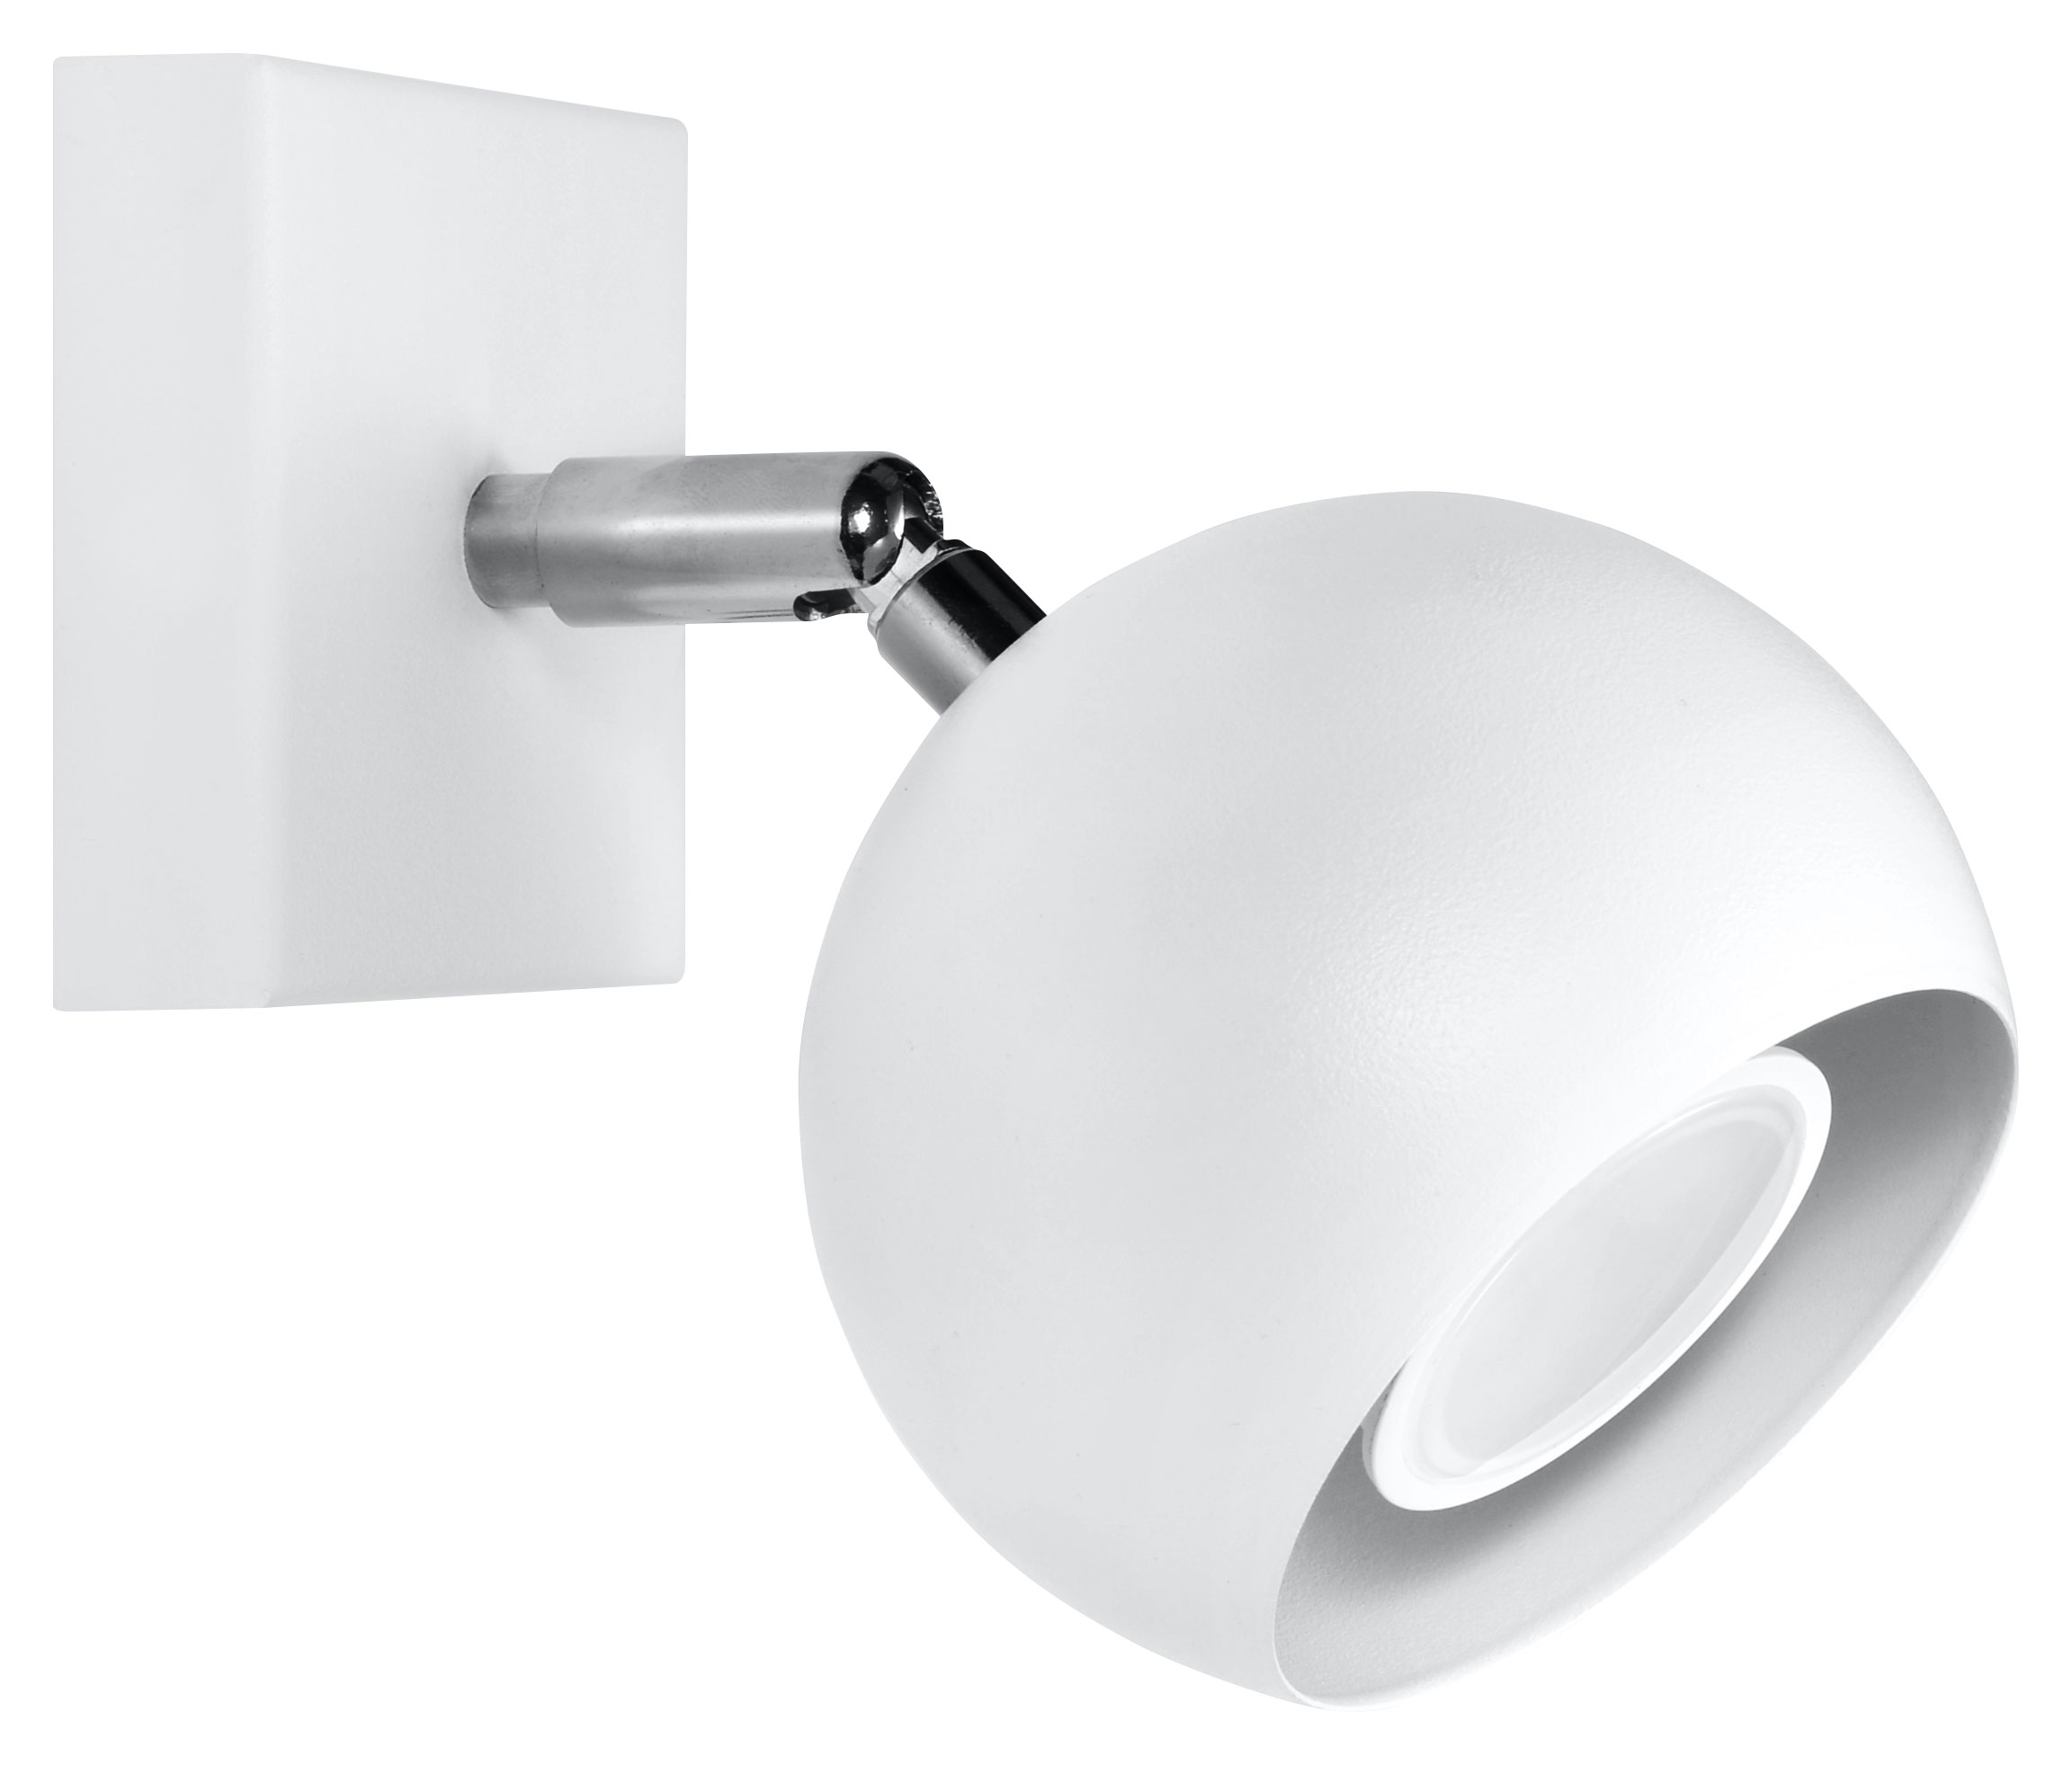 LED Wandleuchte schwenkbar weiß Stahl inkl. LED warmweiß 7W | LichtED.de -  LED Lampen und Beleuchtung